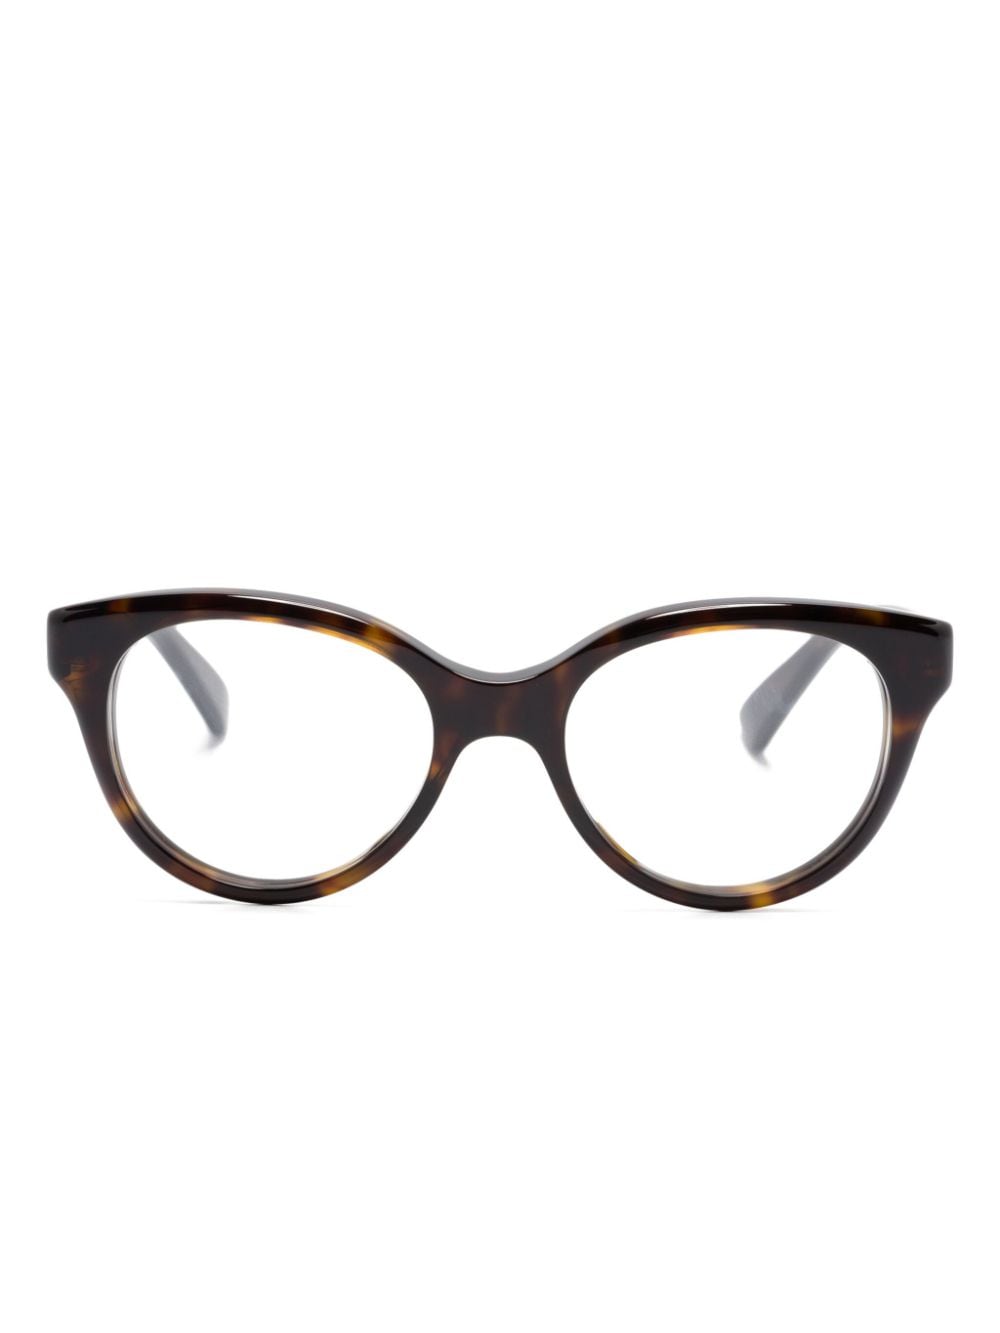 Gucci Eyewear tortoiseshell round-frame glasses - Brown von Gucci Eyewear